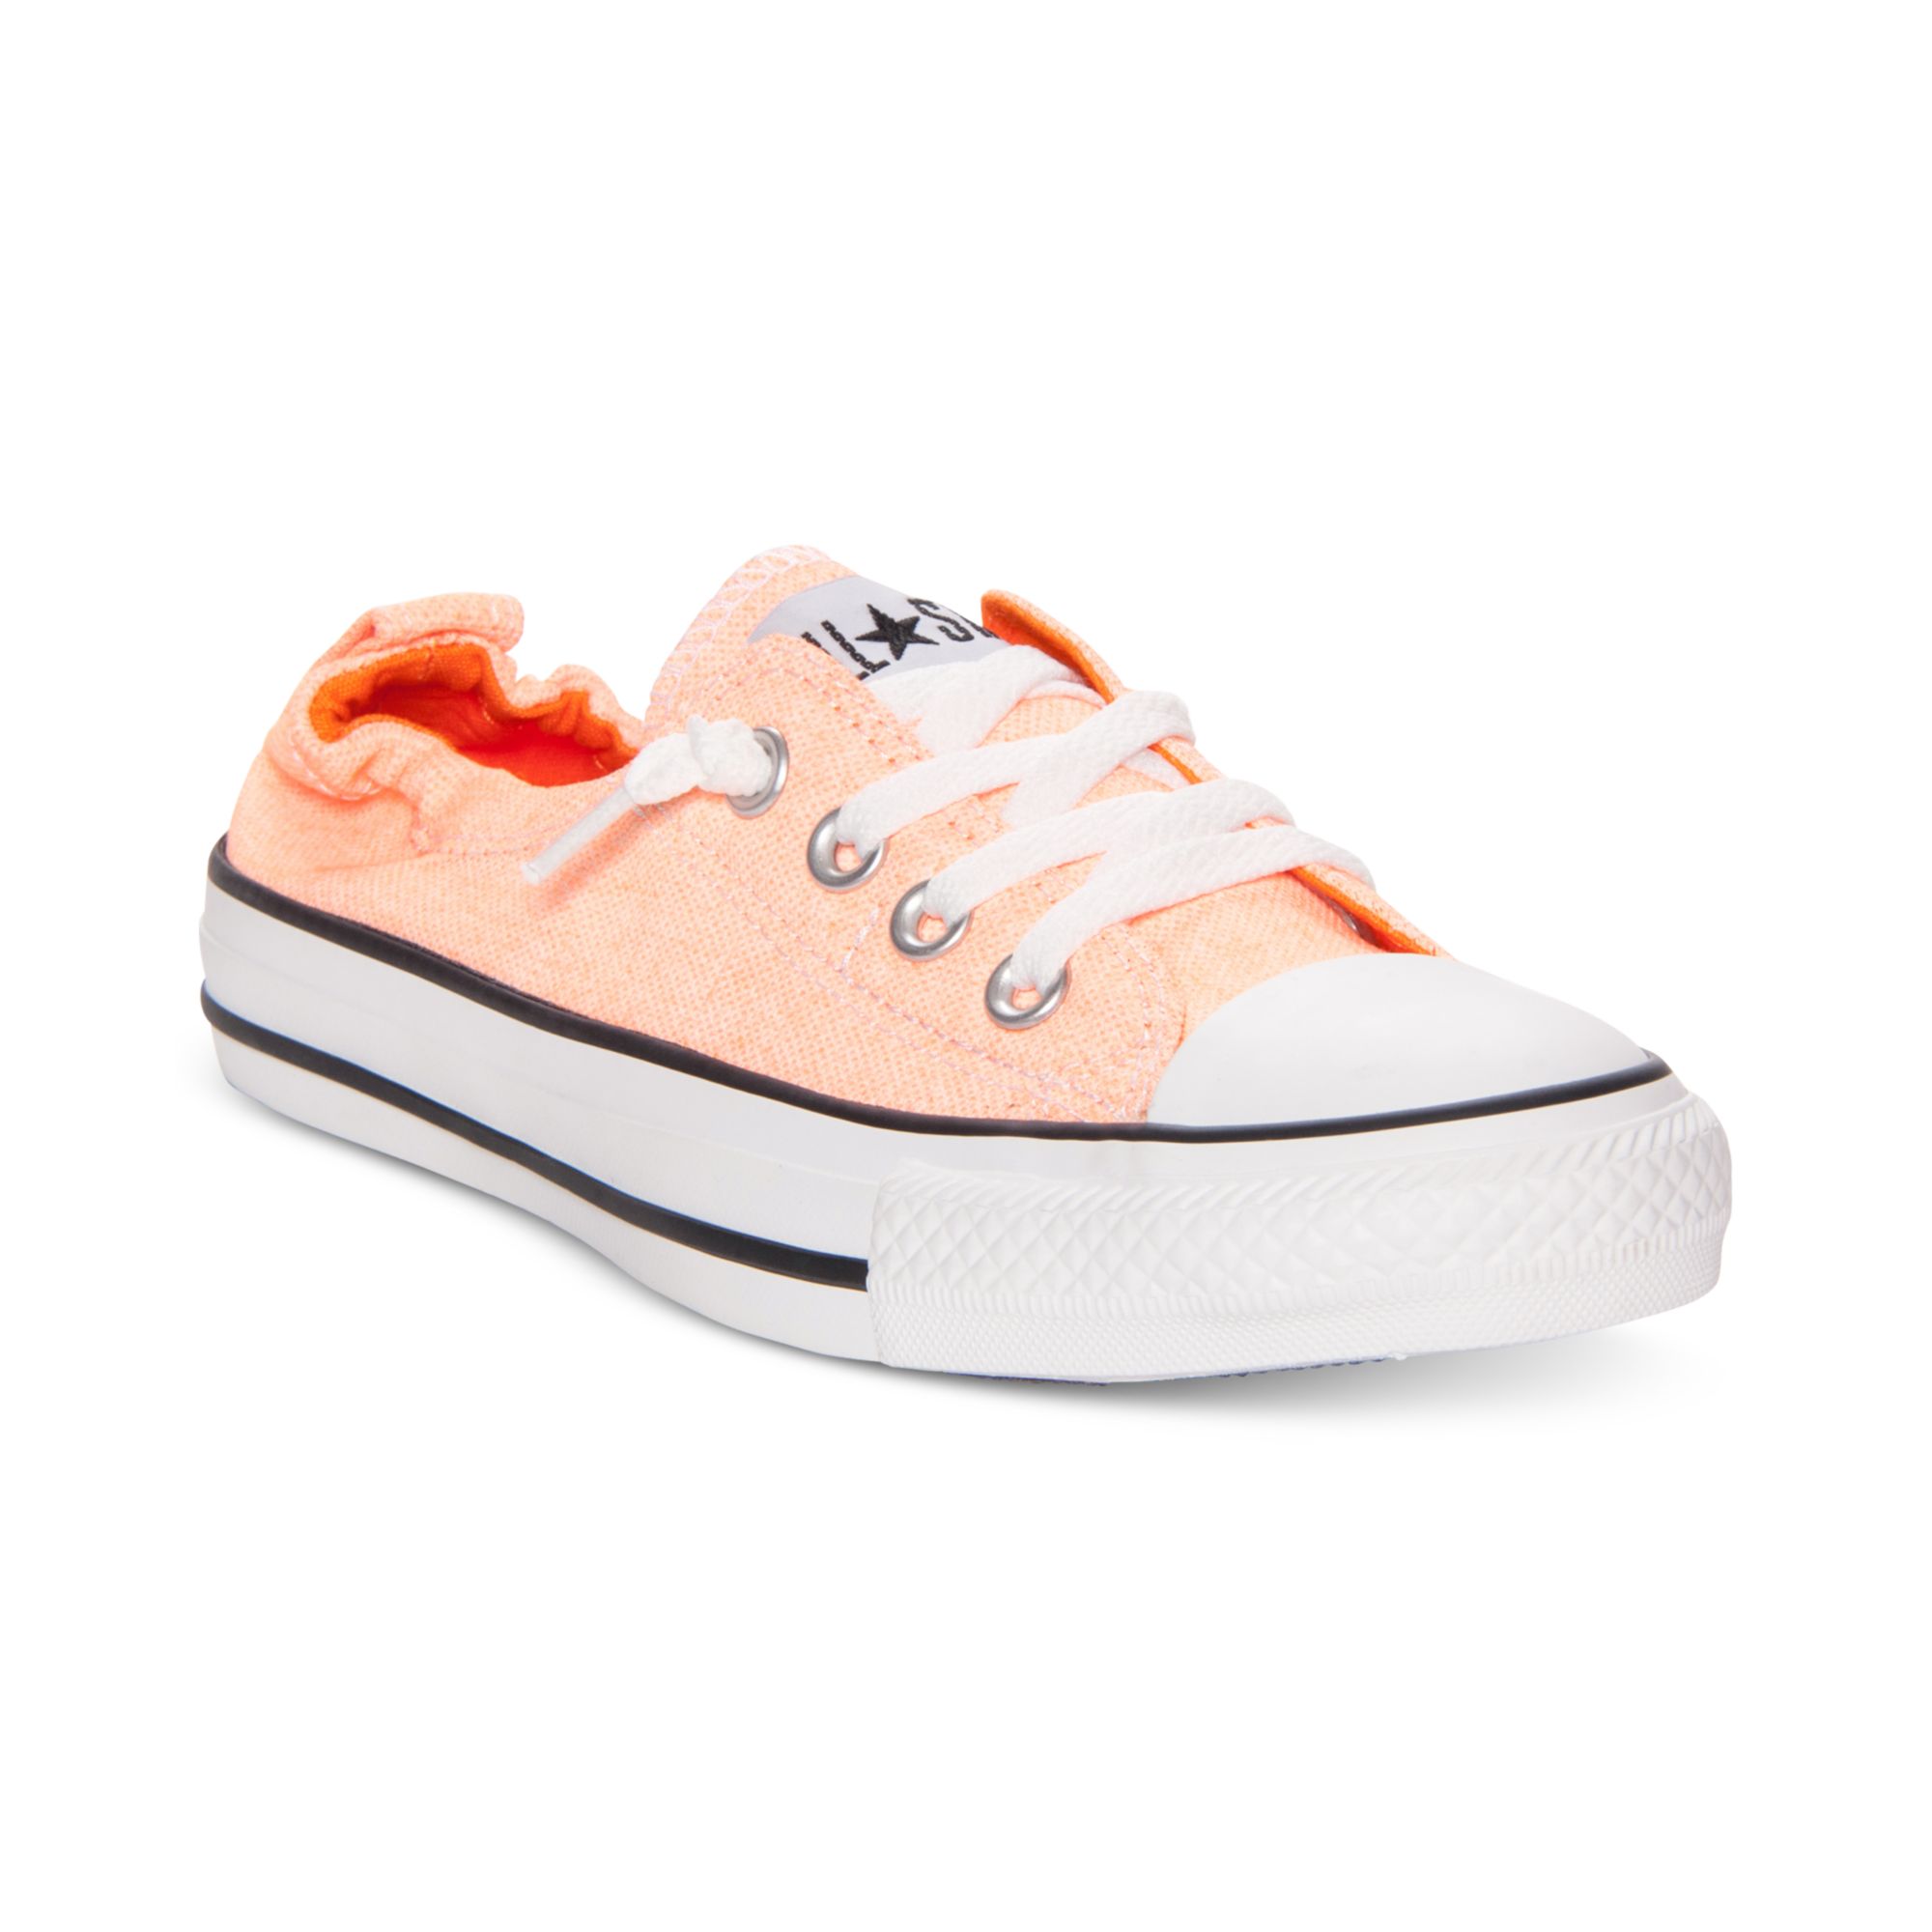 Converse Chuck Taylor Shoreline Casual Sneakers in Orange | Lyst